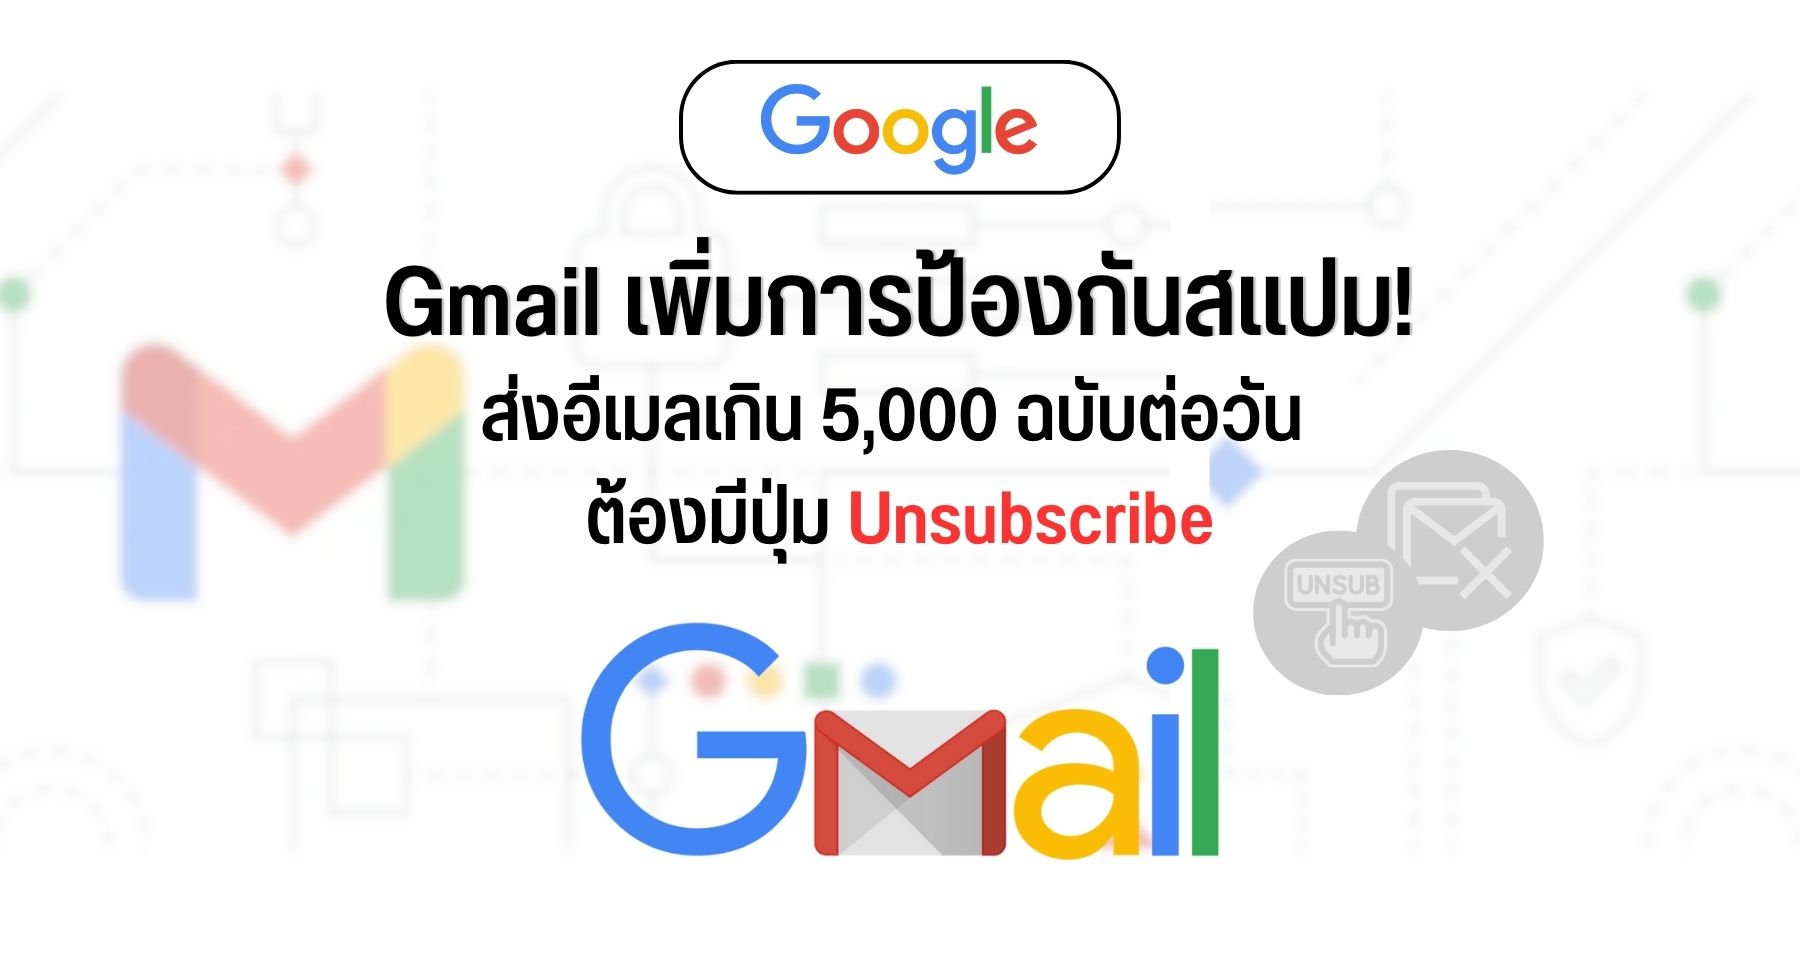 Gmail เพิ่มการป้องกันสแปม ส่งอีเมลเกิน 5,000 ฉบับต่อวัน ต้องมีปุ่ม Unsubscribe